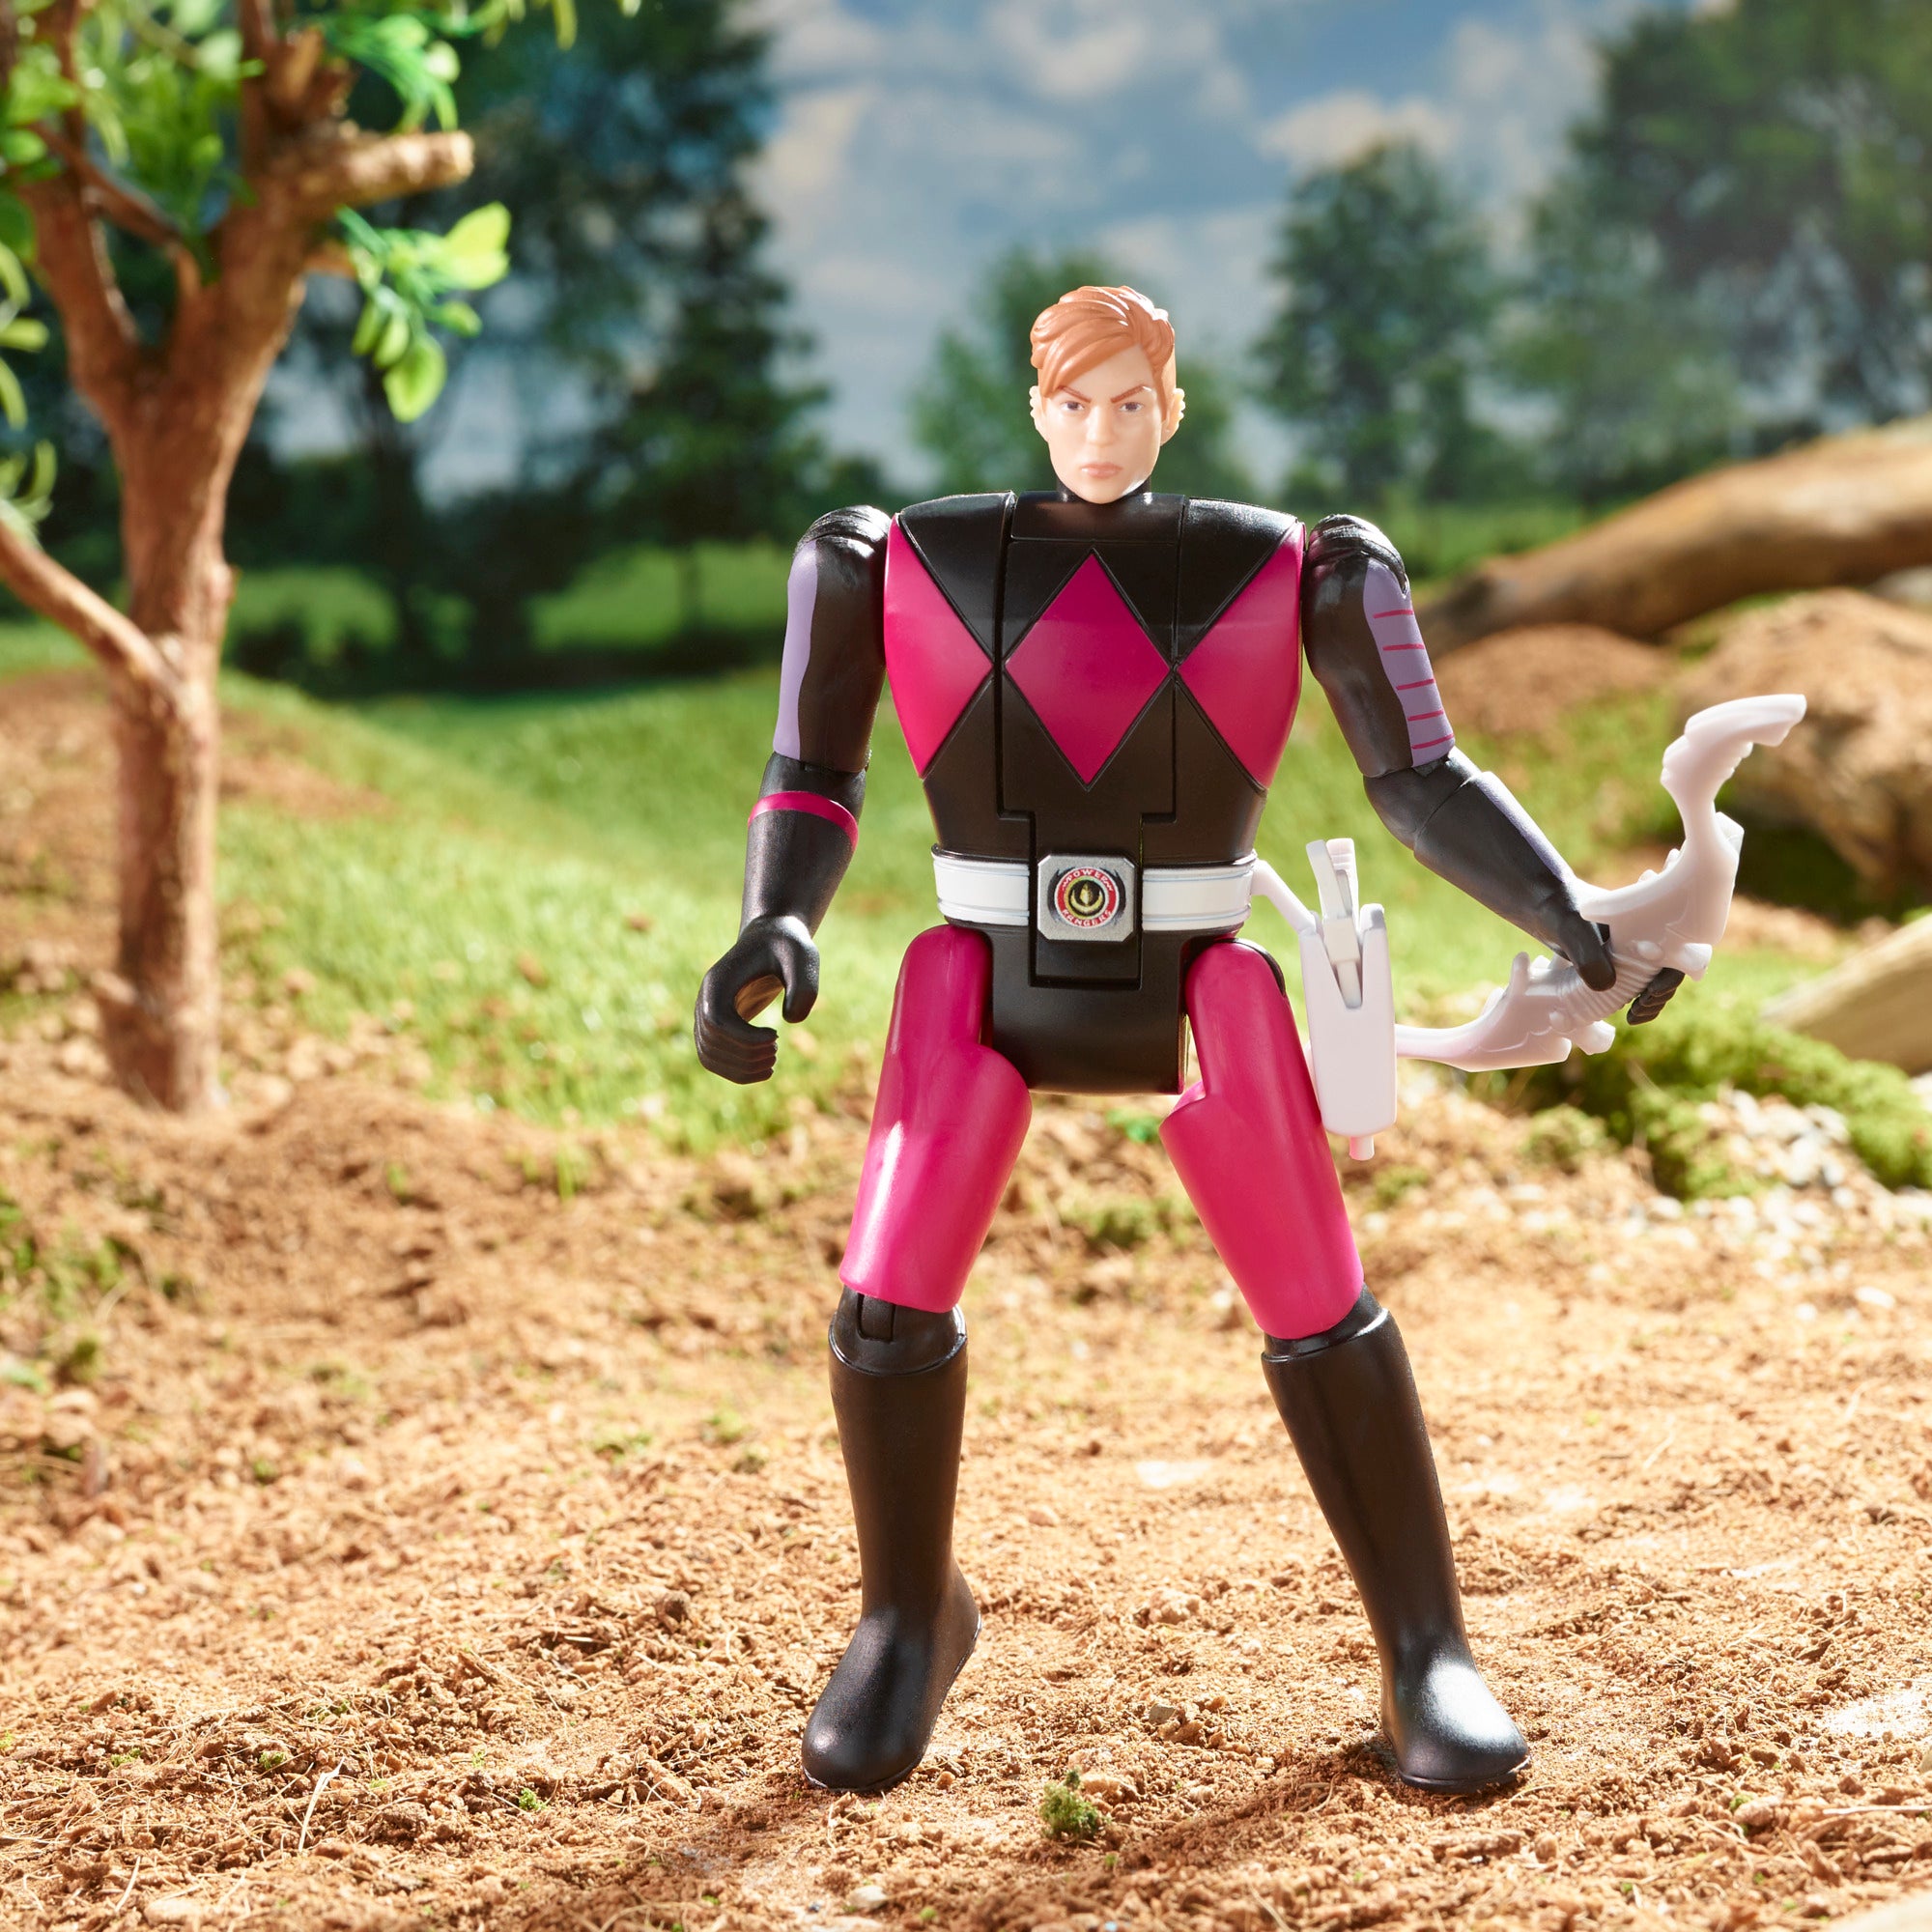 Power Rangers Retro-Morphin Ranger Slayer Kimberly – Hasbro Pulse